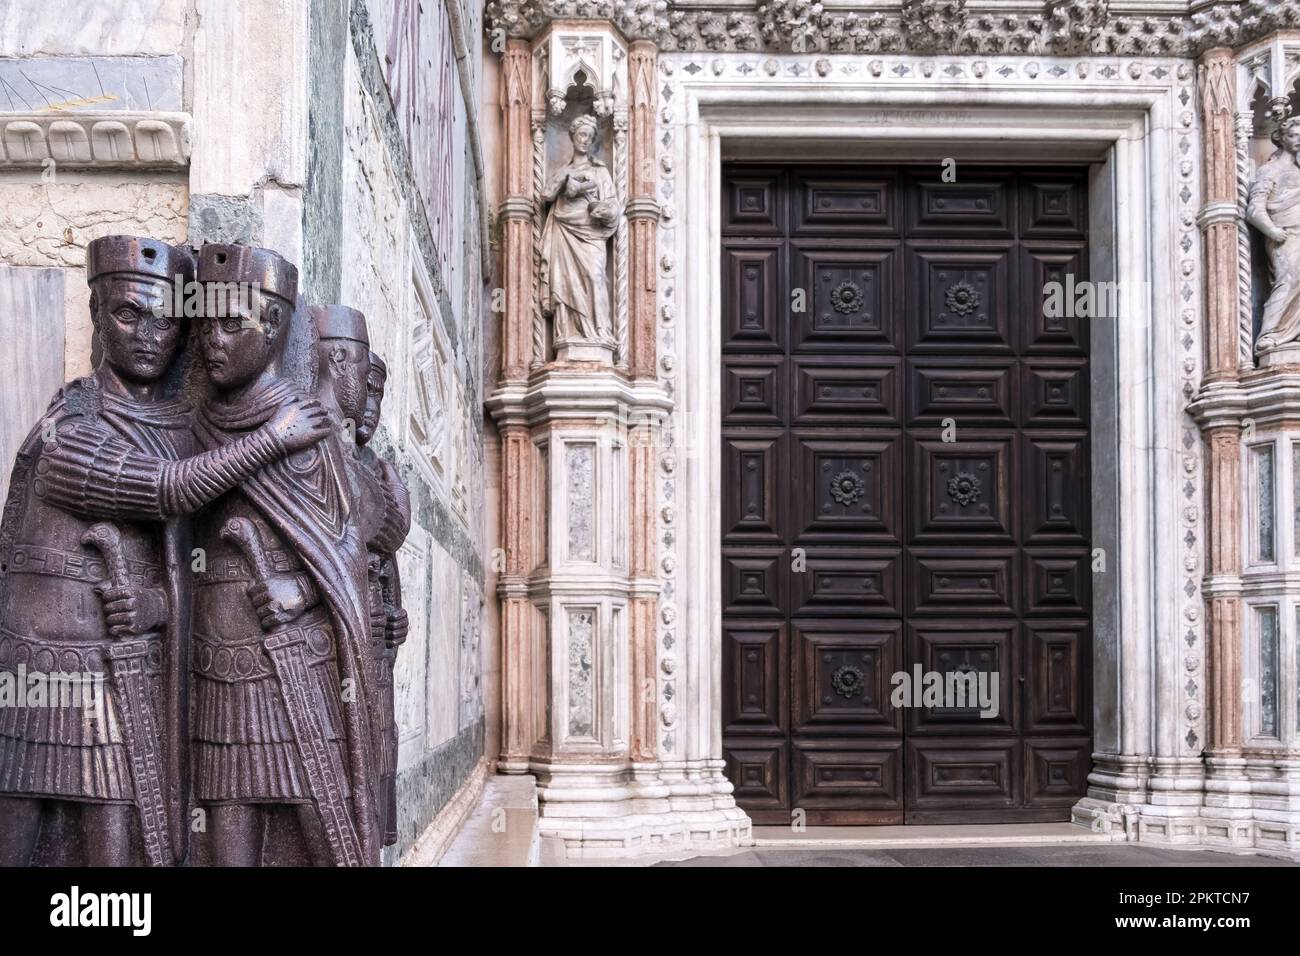 Vista sul Palazzo Ducale, un palazzo costruito in stile gotico veneziano situato in Piazza San Marco e uno dei principali punti di riferimento della città di Venezia Foto Stock